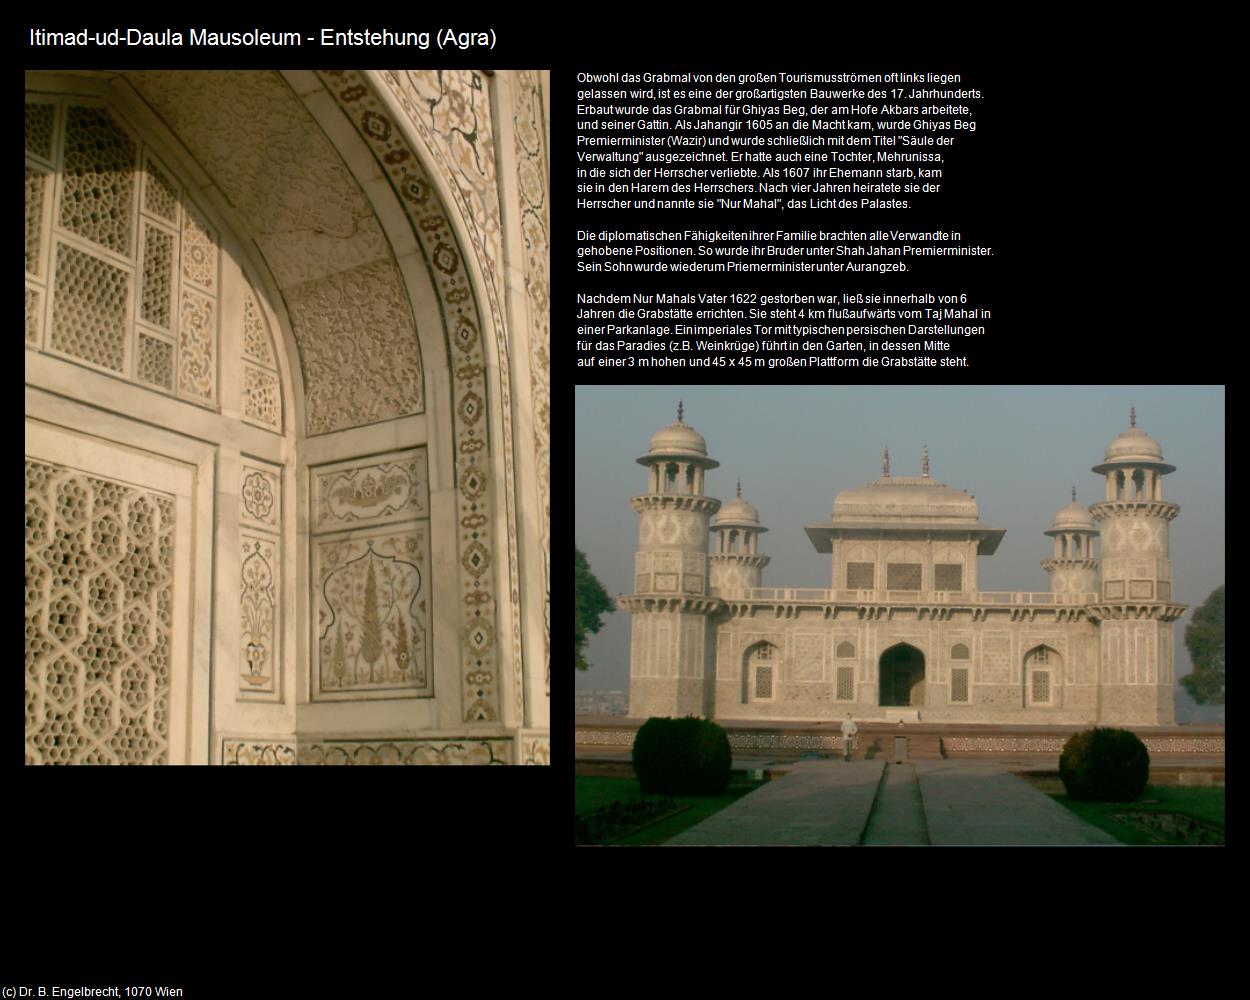 Itimad-ud-Daula Mausoleum - Entstehung (Agra) in Rajasthan - das Land der Könige